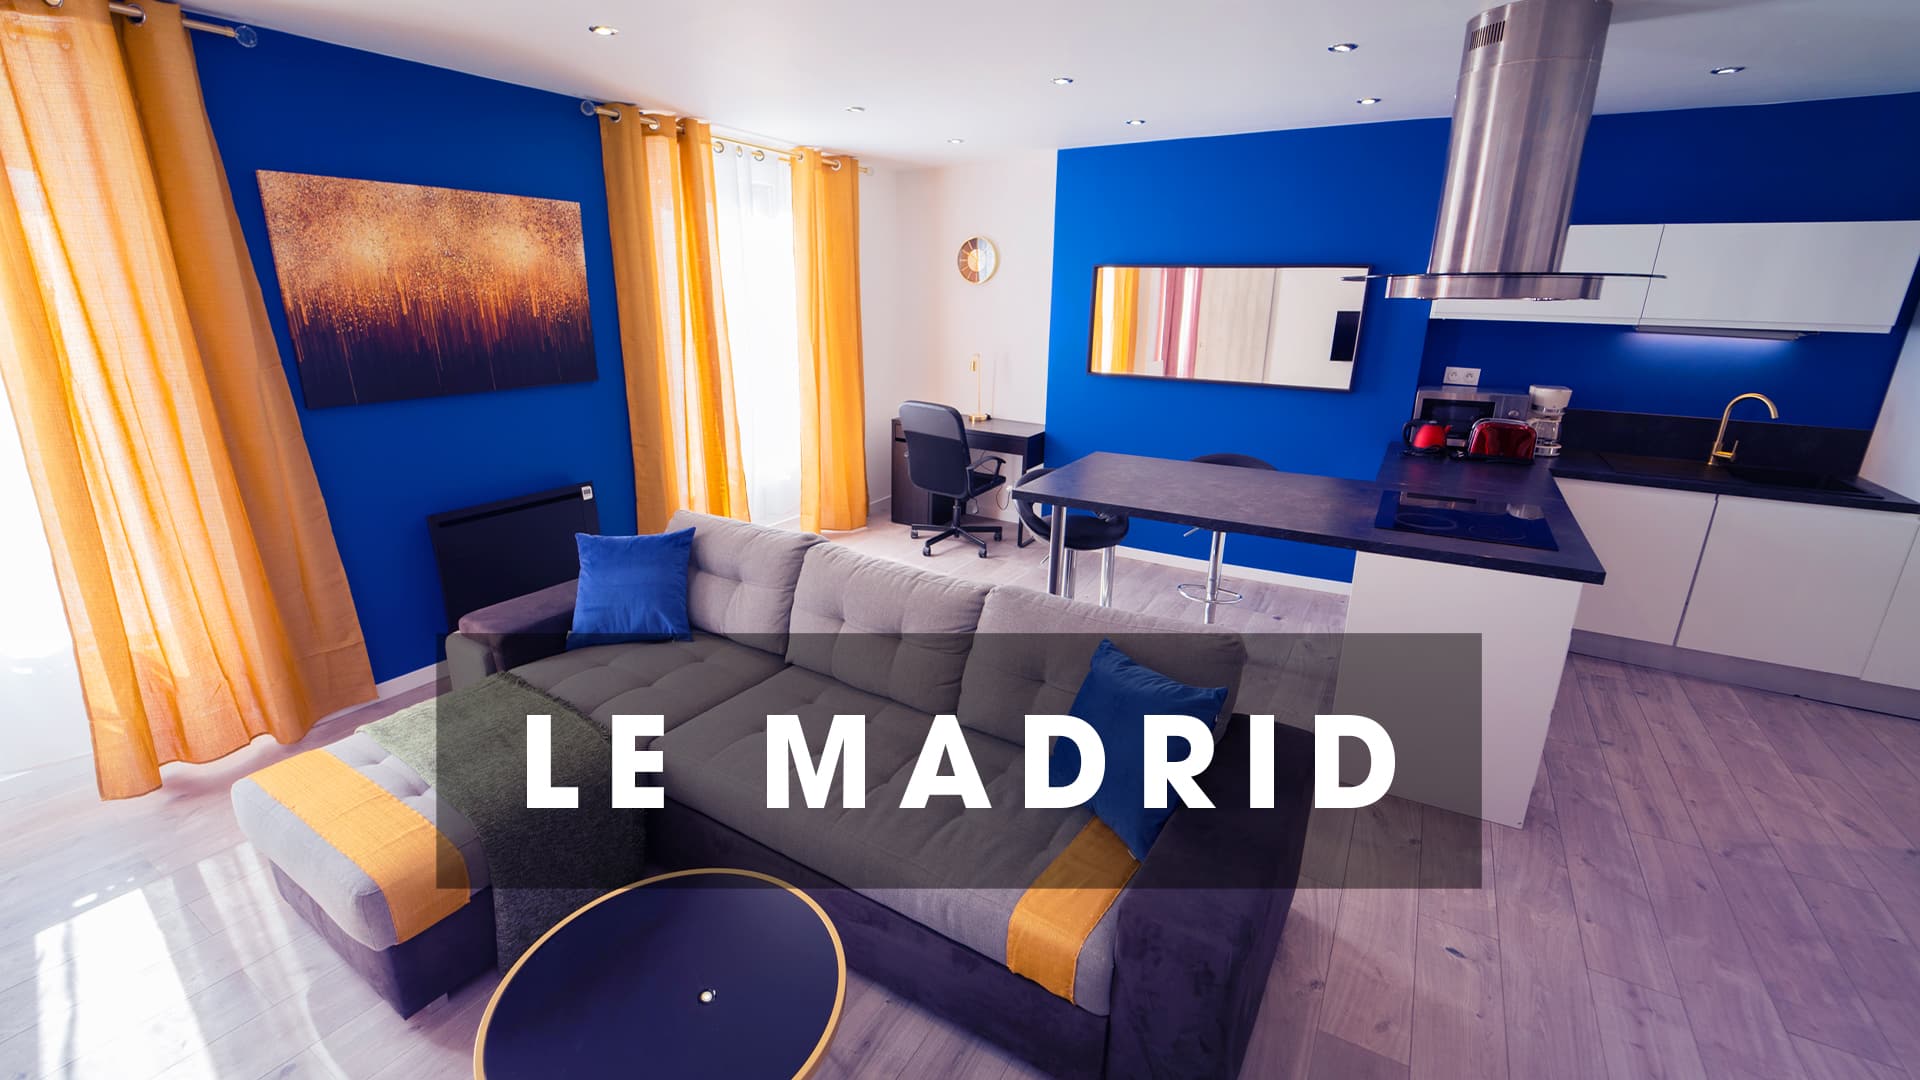 Turquoise location Le Madrid Le Madrid